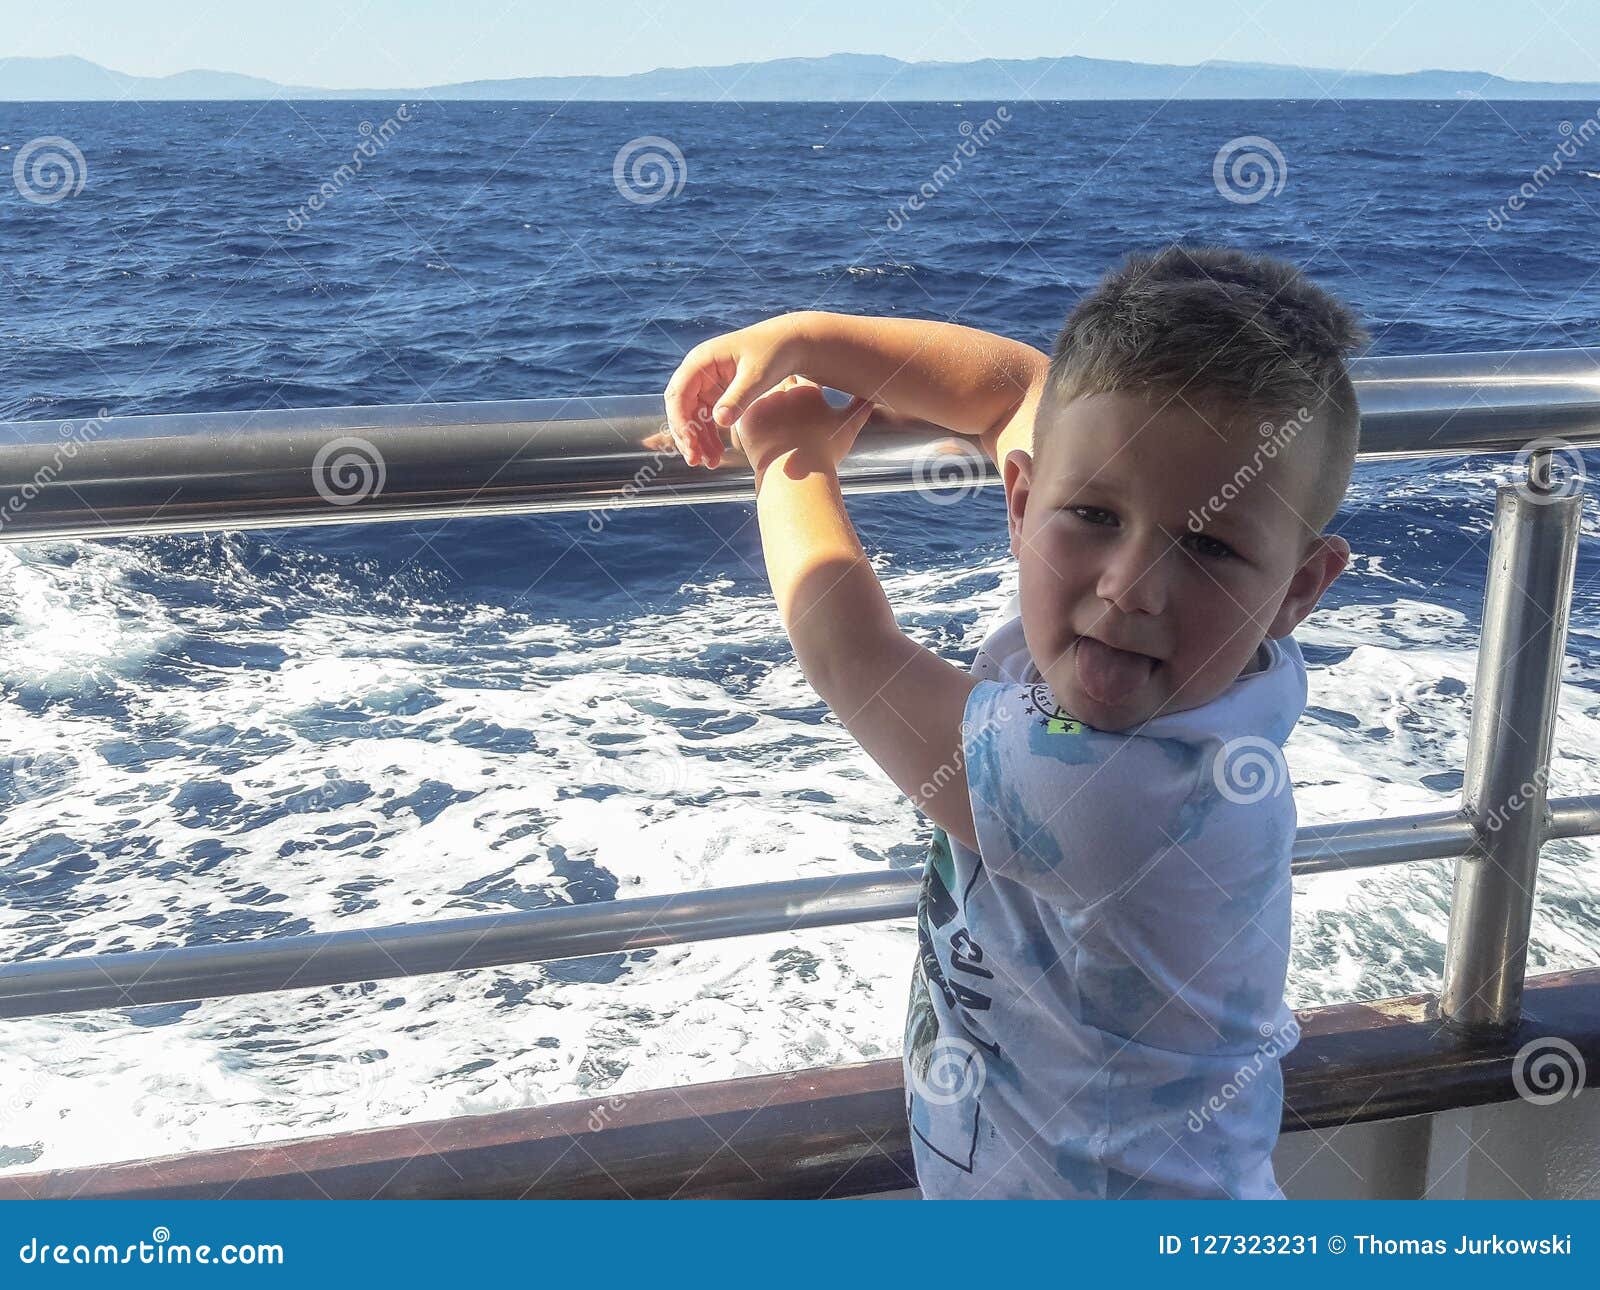 男孩在船上航行的背景图片素材-编号27573869-图行天下